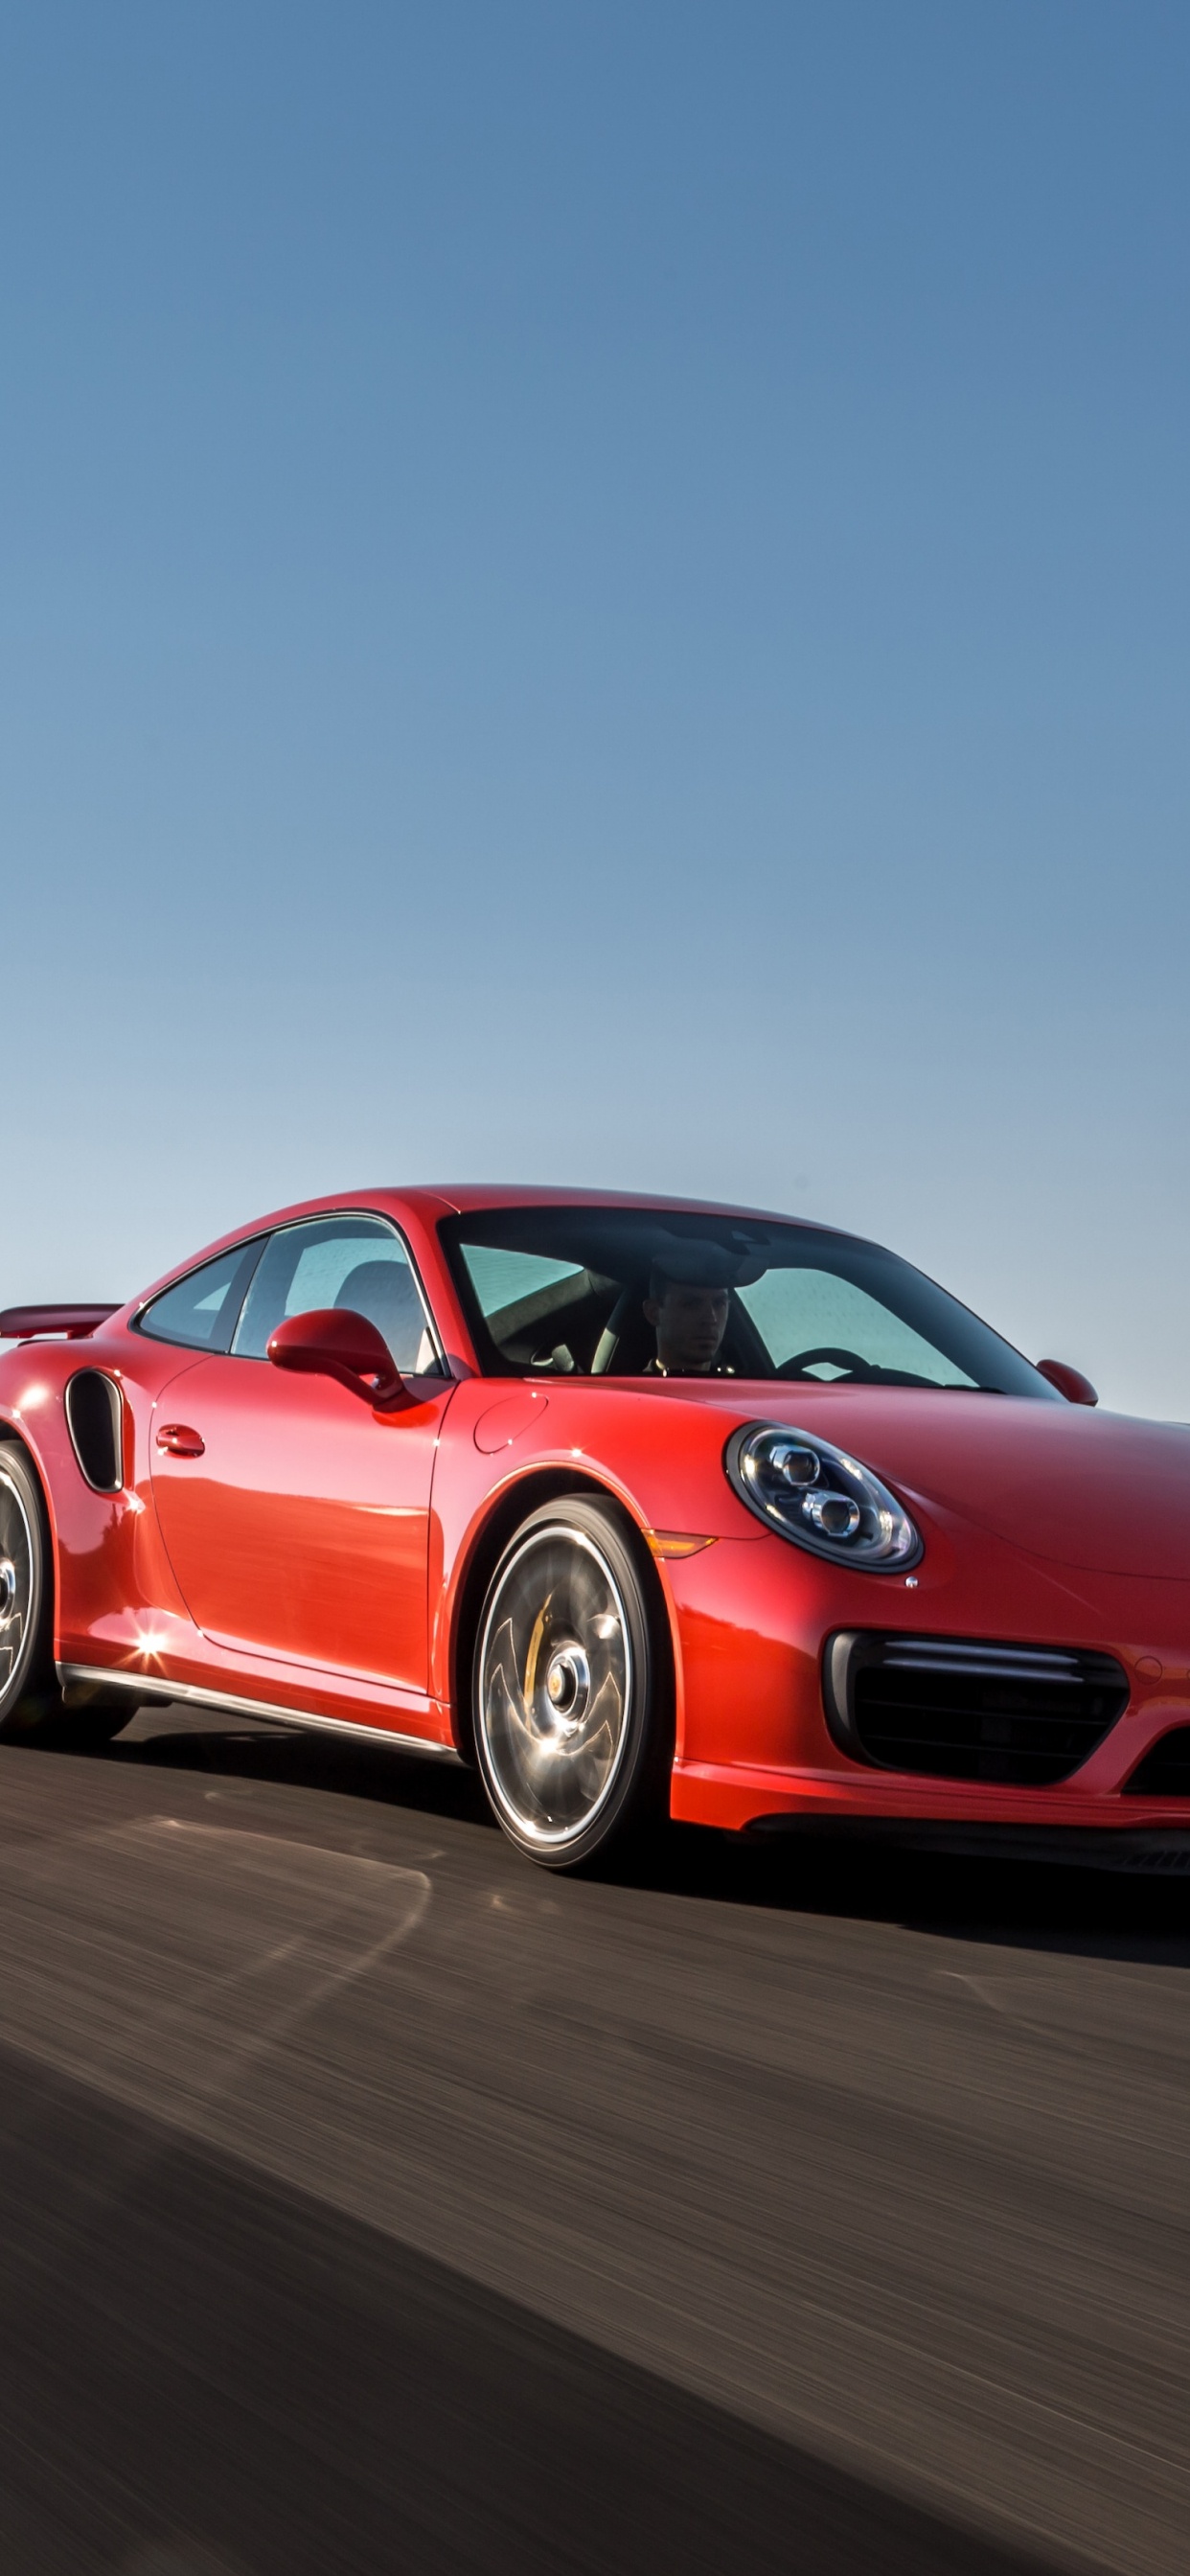 Porsche 911 Rojo en la Carretera Durante el Día. Wallpaper in 1242x2688 Resolution